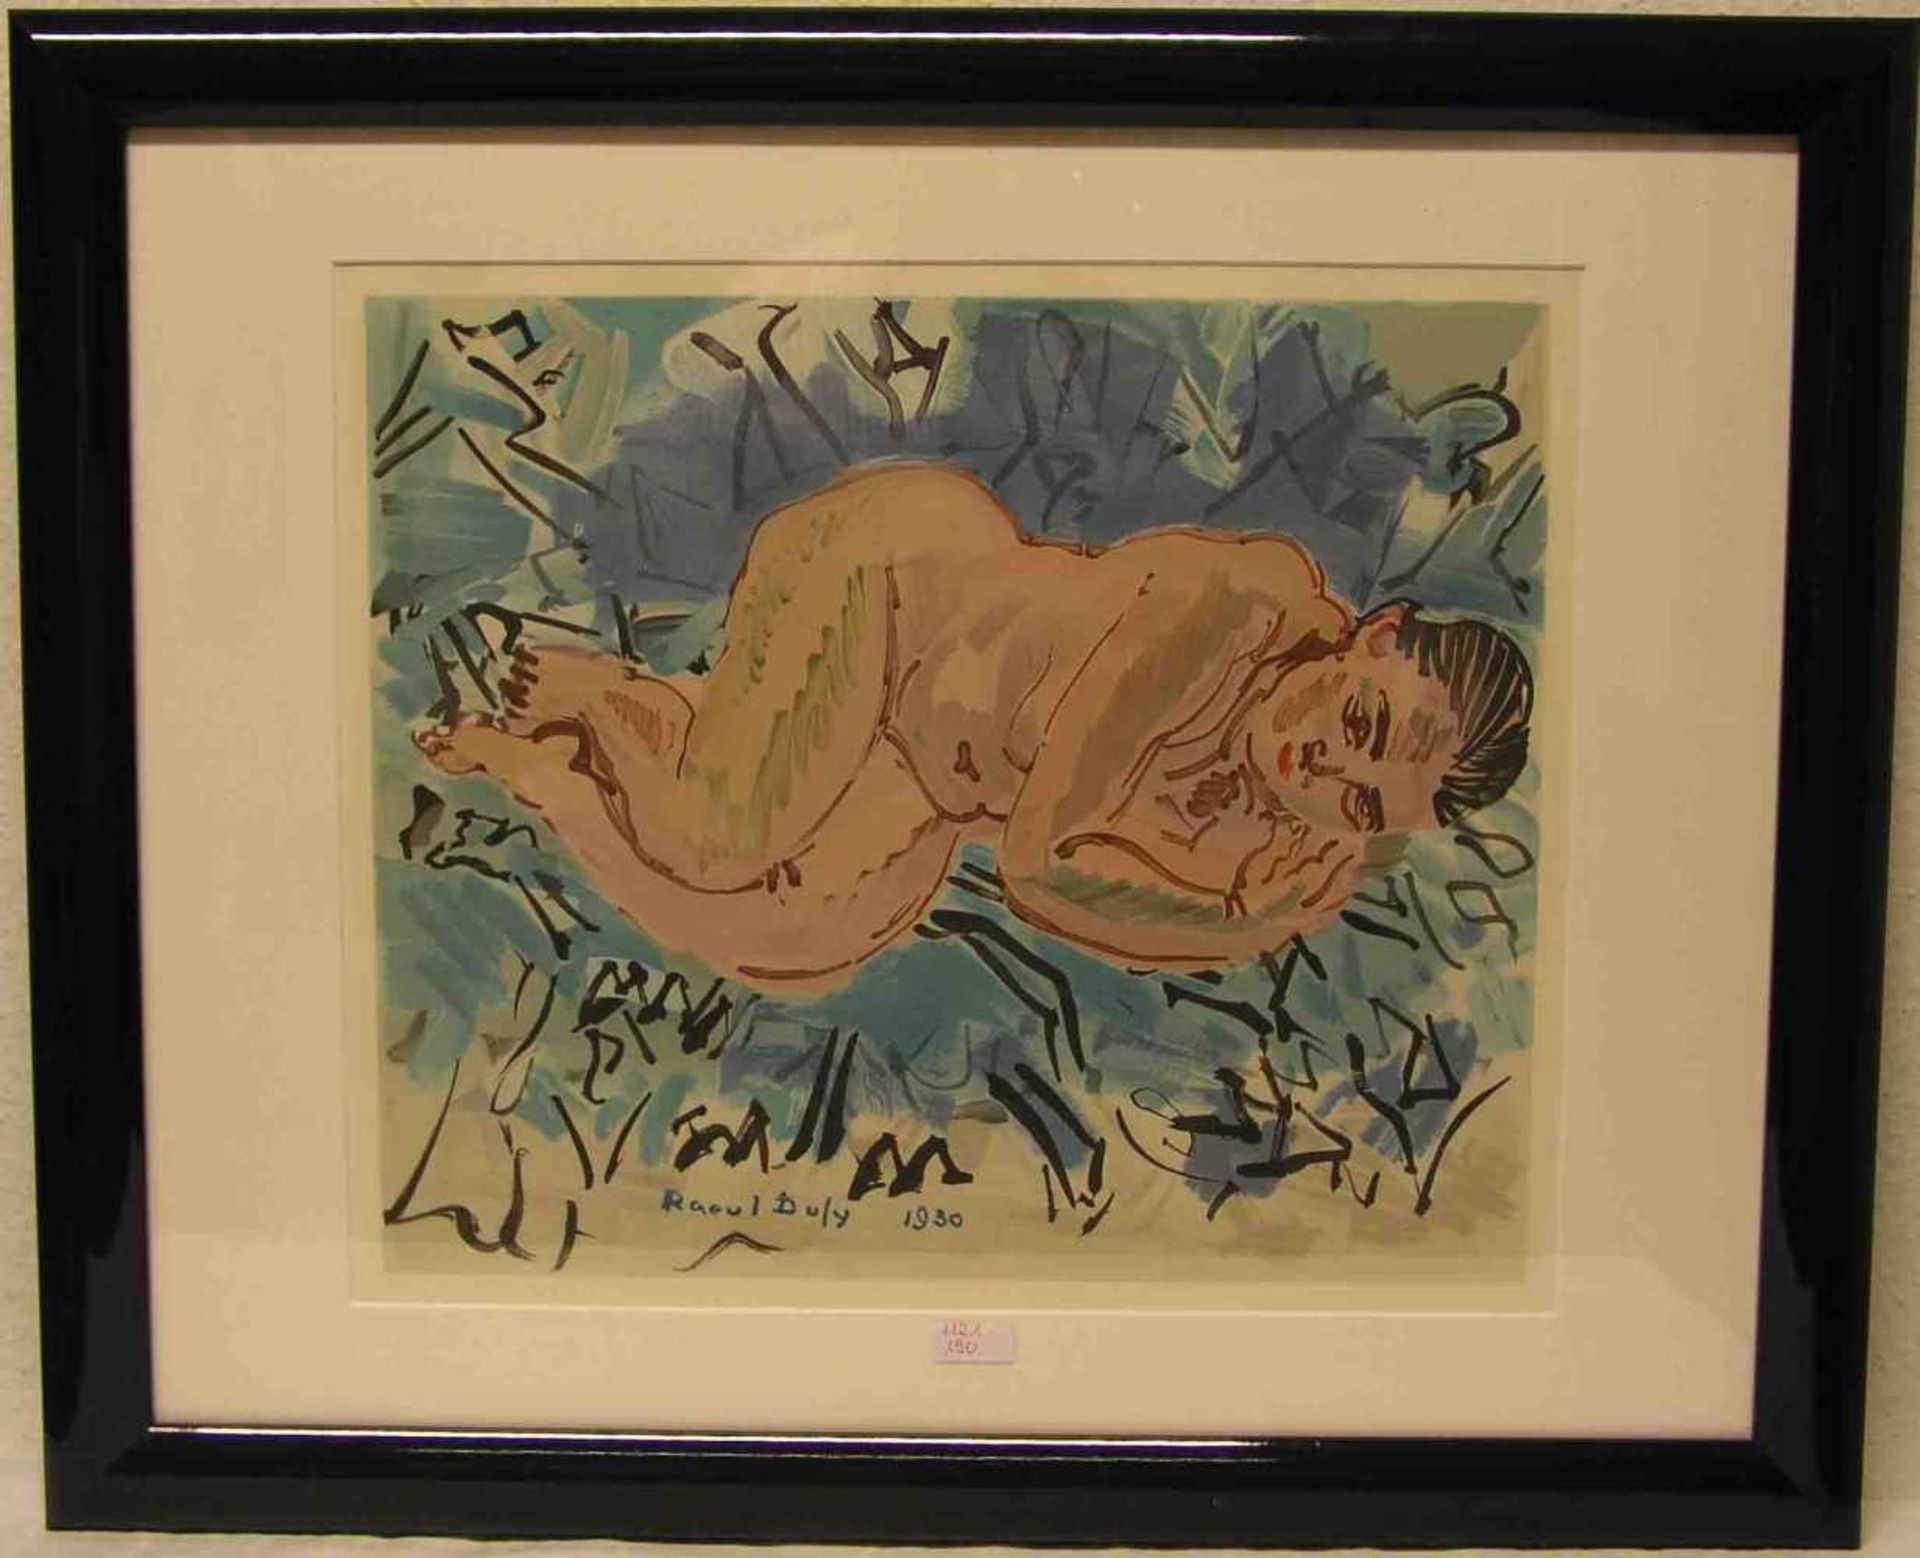 Dufy Raoul: "Nu couché". Farblithografie nach Original von 1930. In der Platte signiert,Verlag